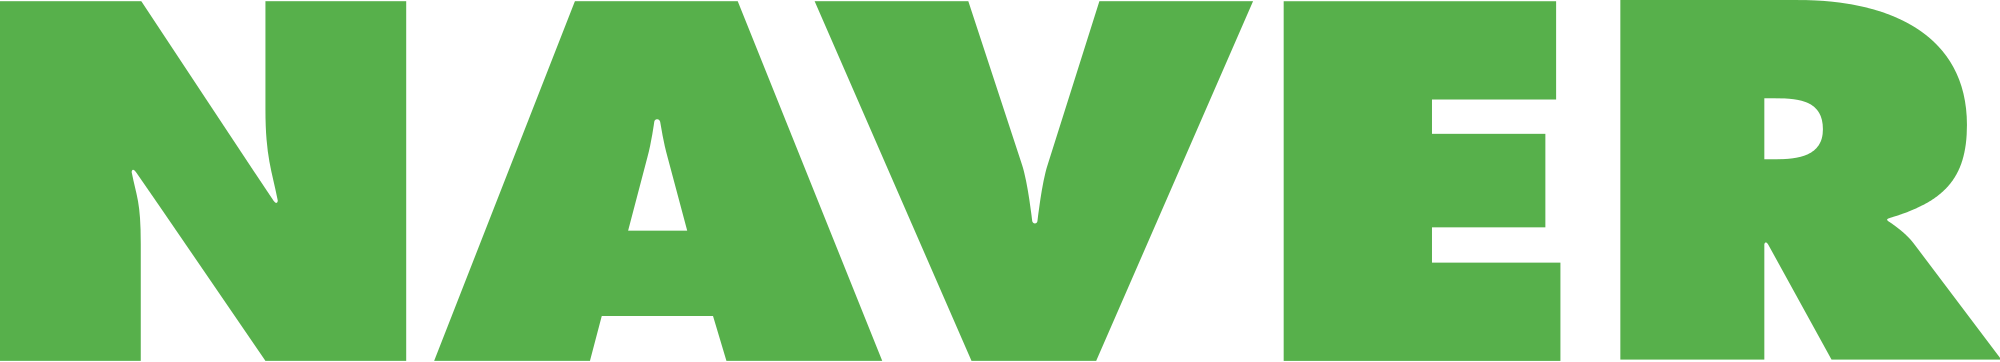 Facebook logo vector free dow